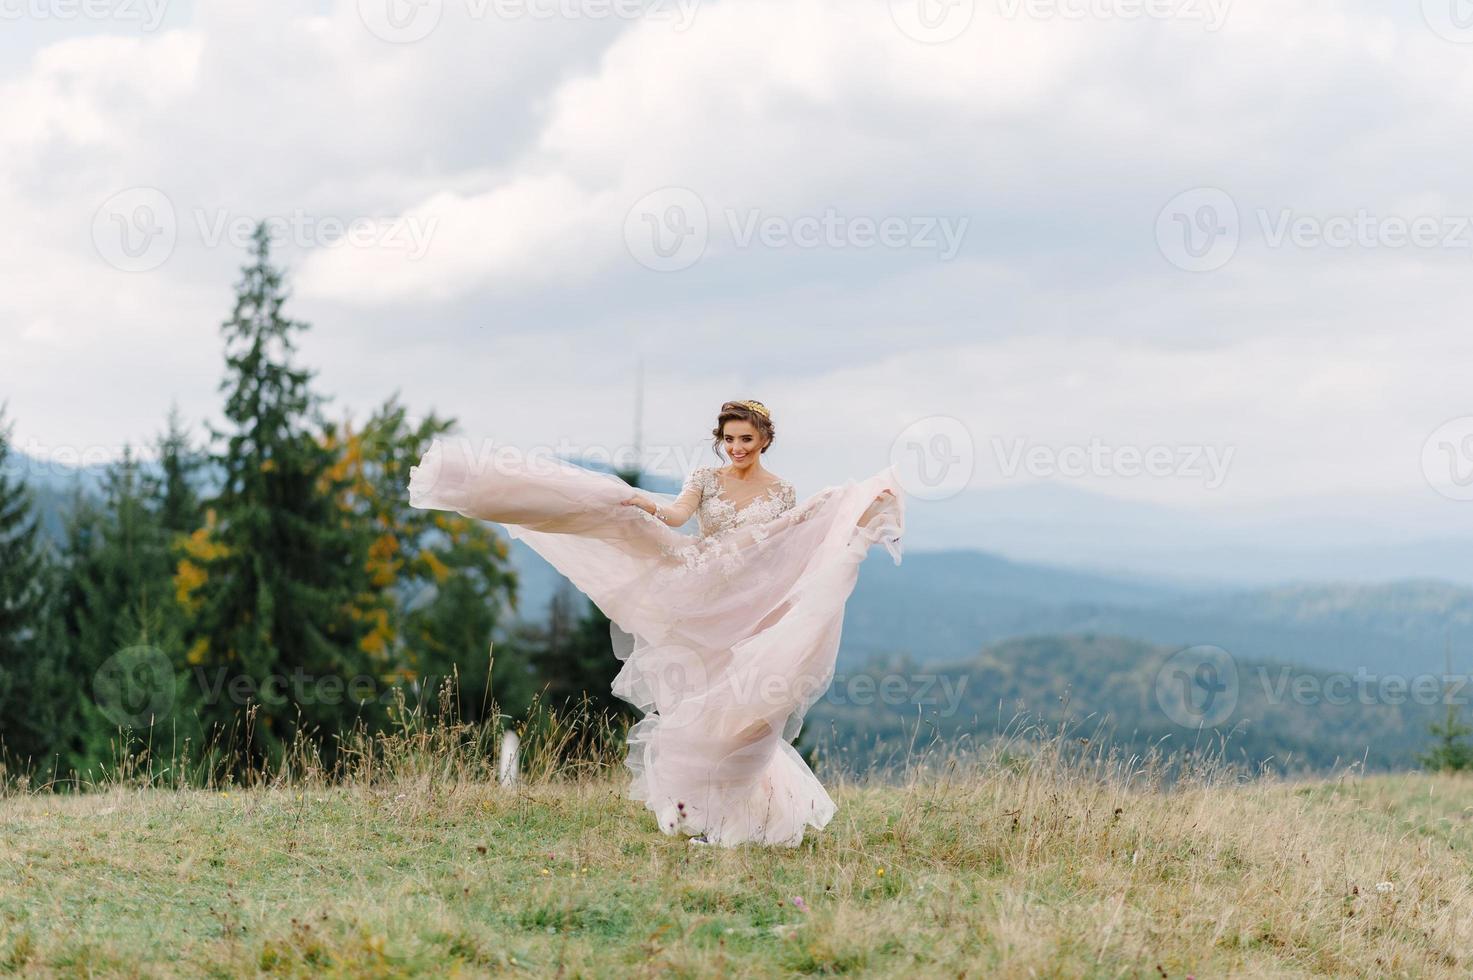 girando noiva segurando a saia véu do vestido de noiva na floresta de pinheiros foto